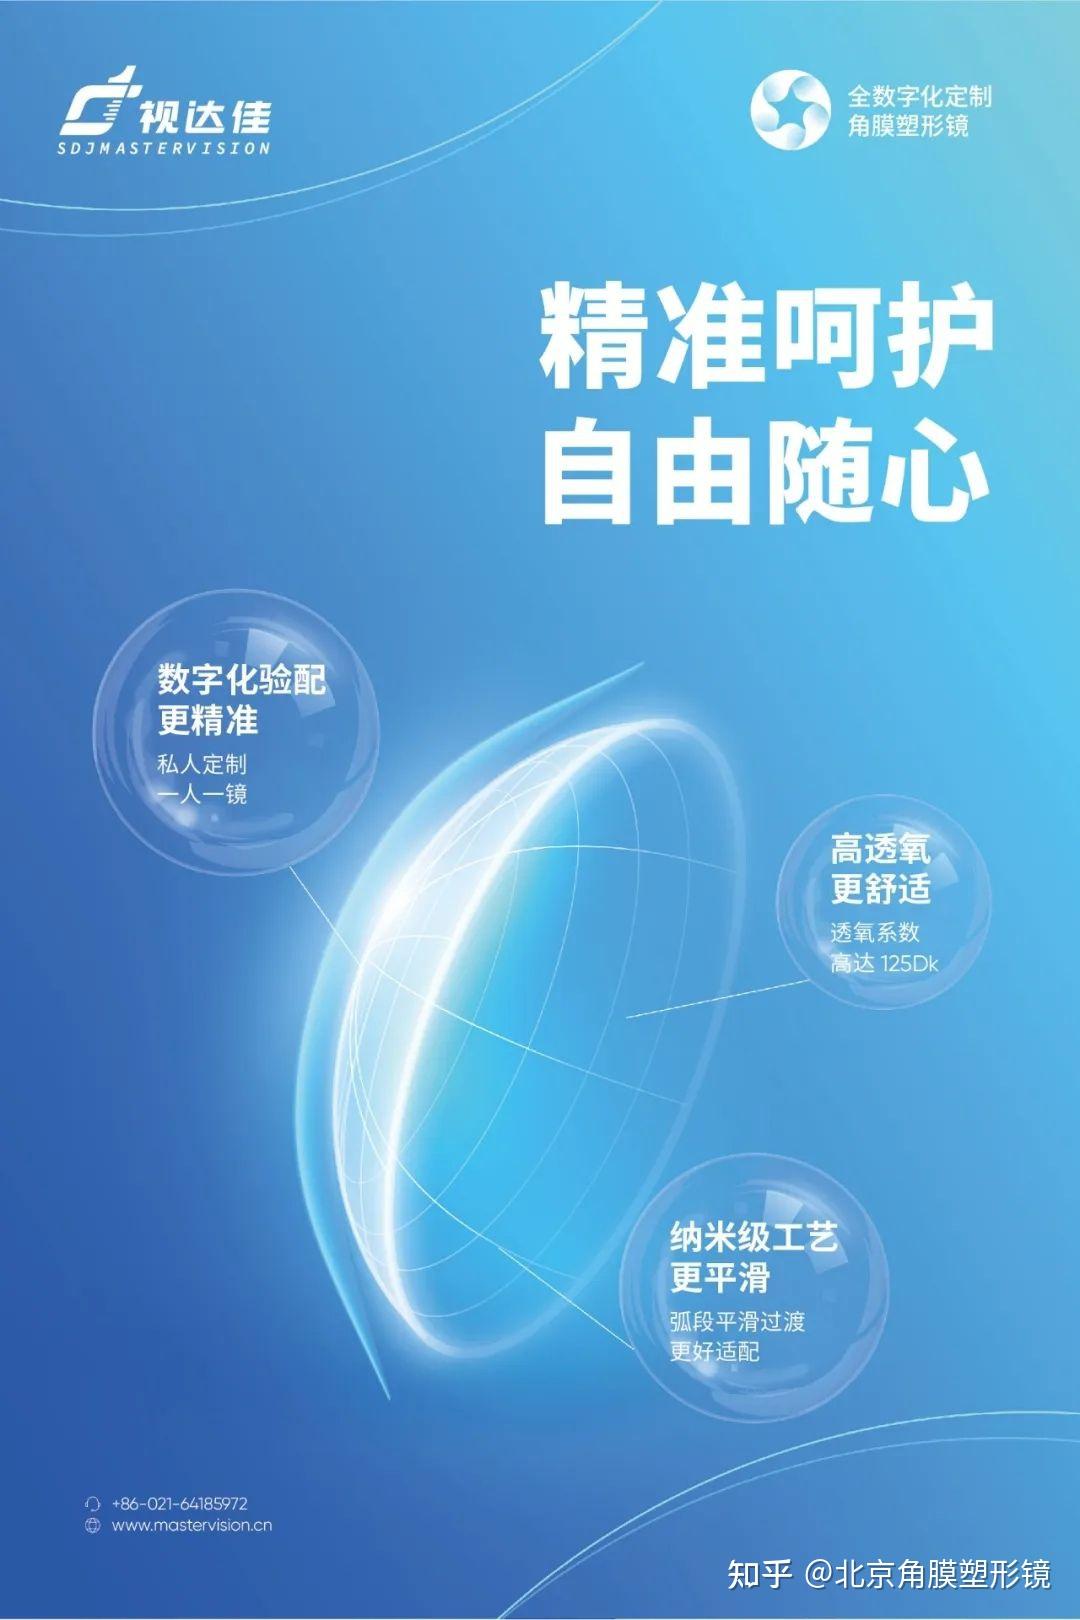 北京新世界梦戴维的官方角膜塑形镜官网角膜塑形镜的利与弊优势与缺点